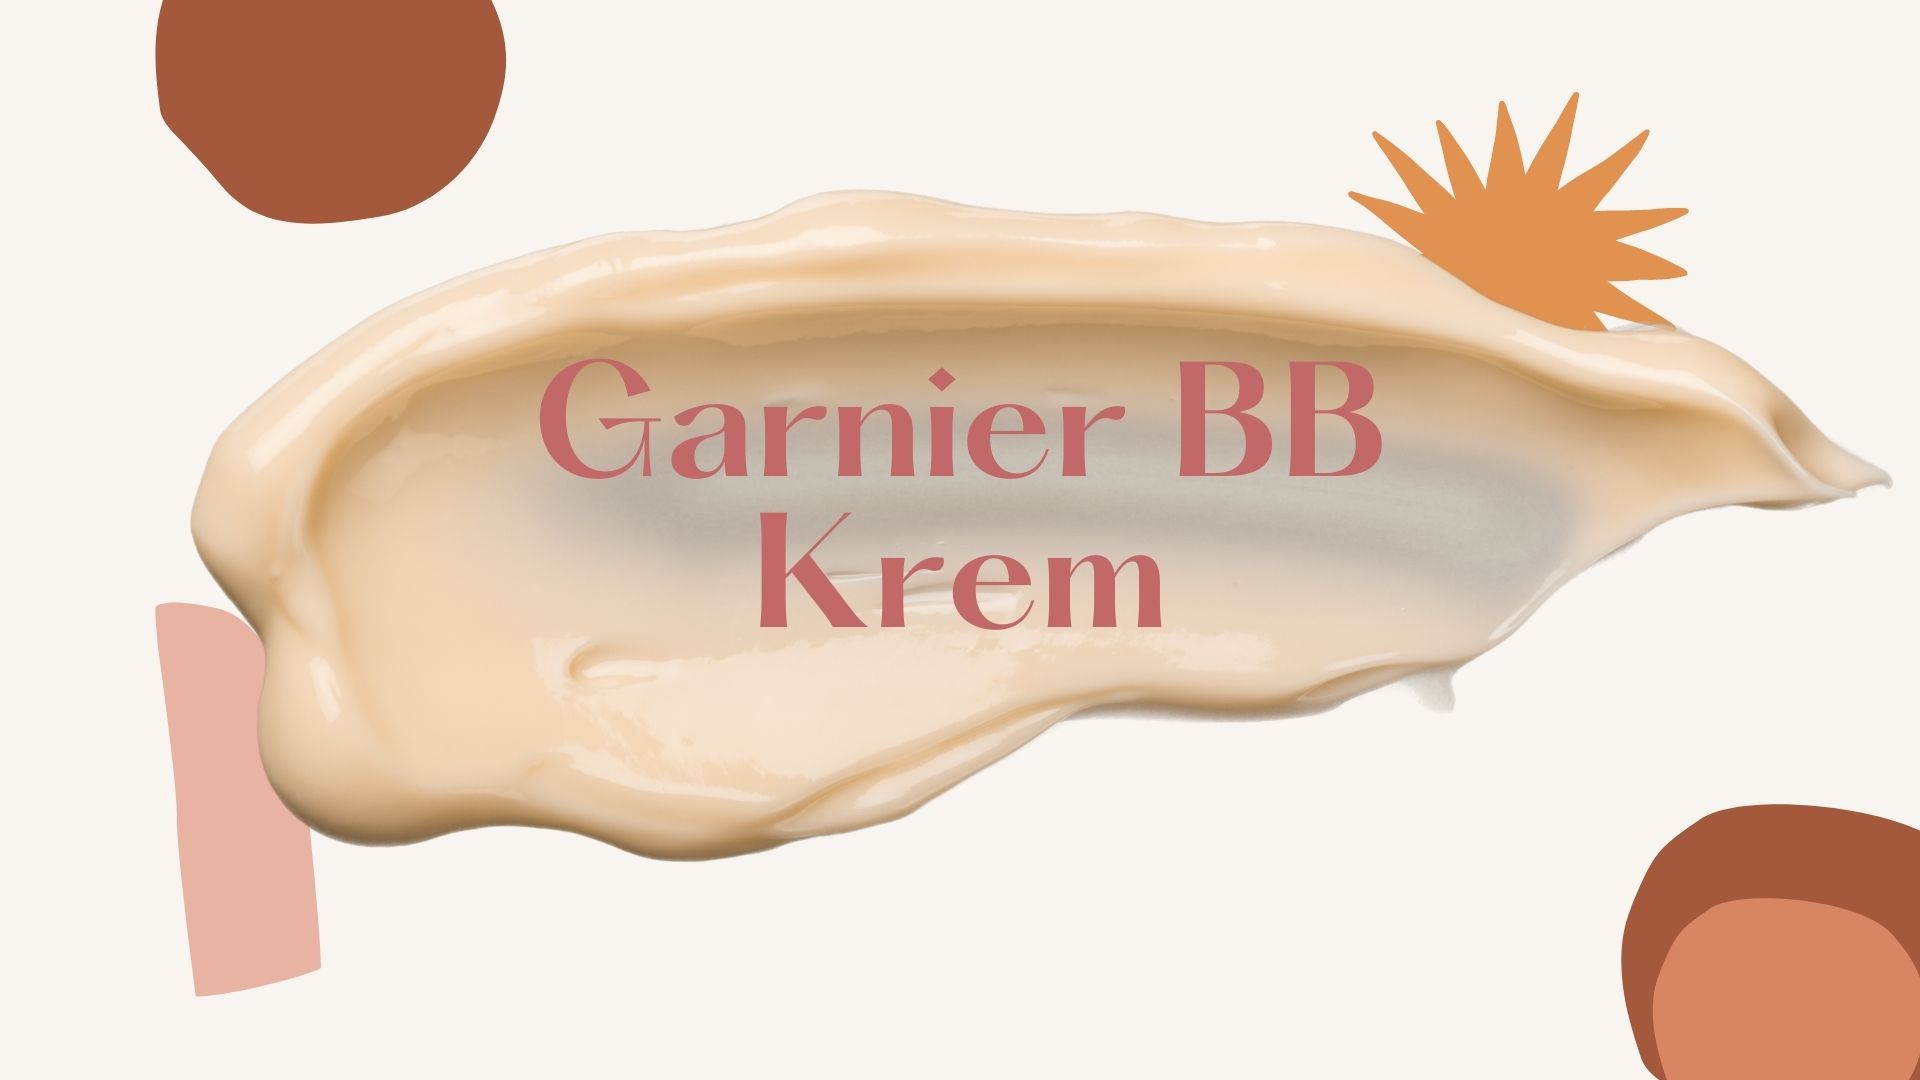 Garnier BB Krem